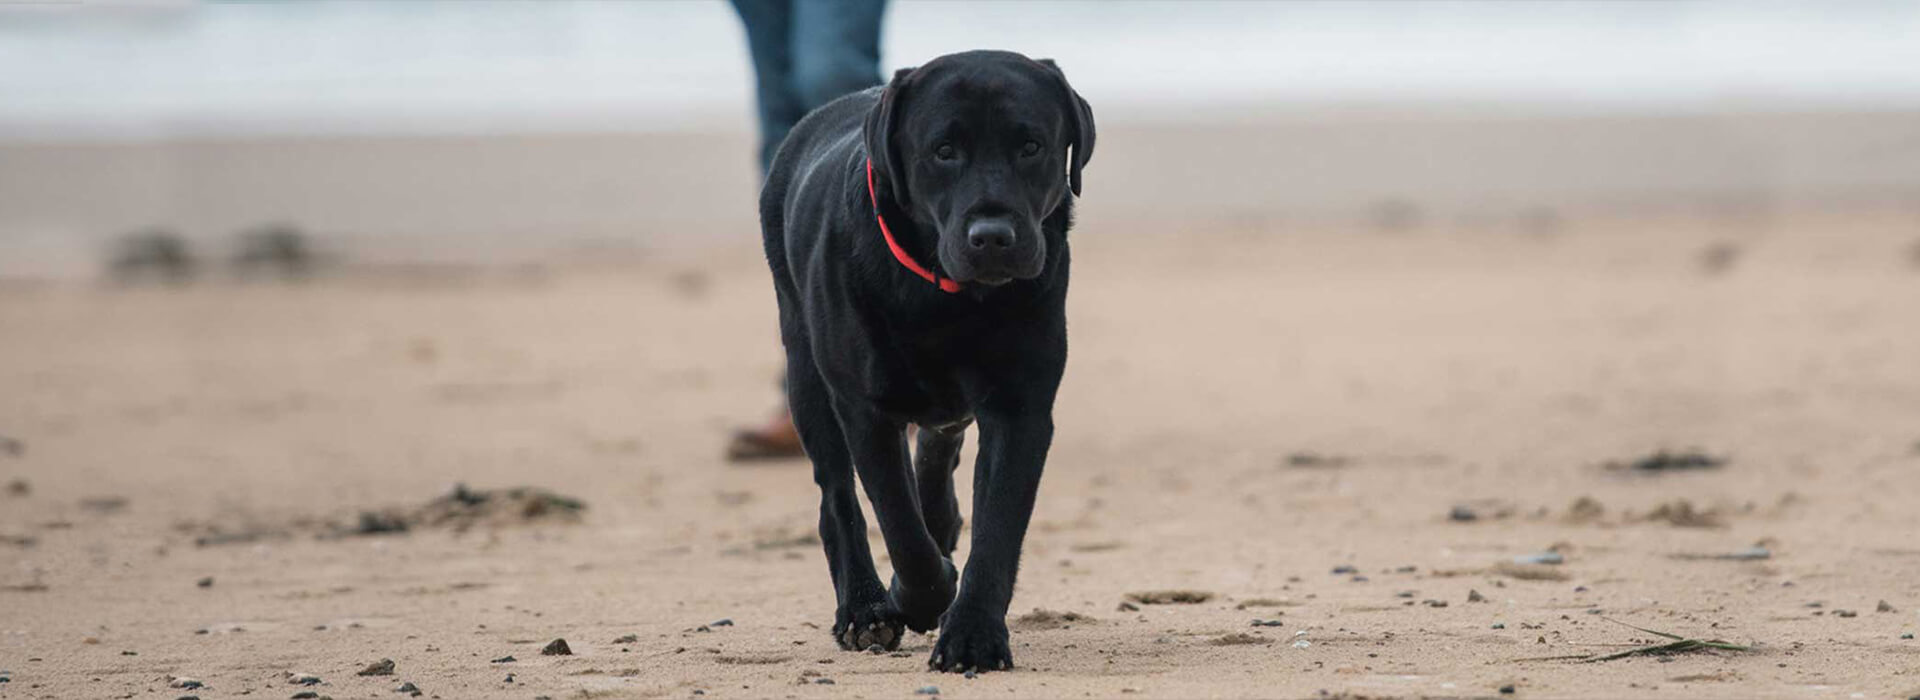 Schwarzer Hund läuft am Strand mit rotem Halsband